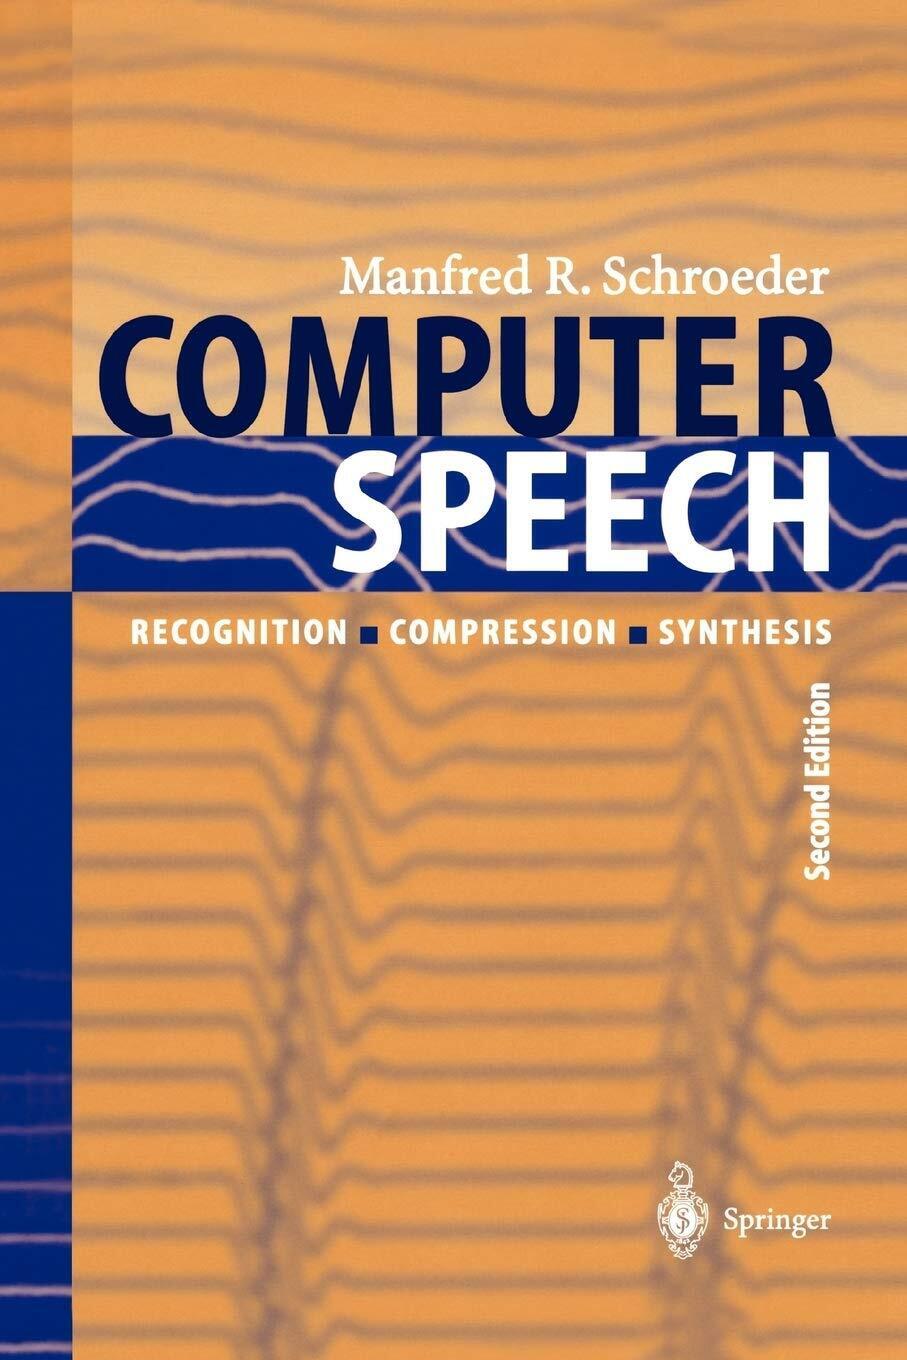 Computer Speech - Manfred R. Schroeder - Springer, 2010 libro usato